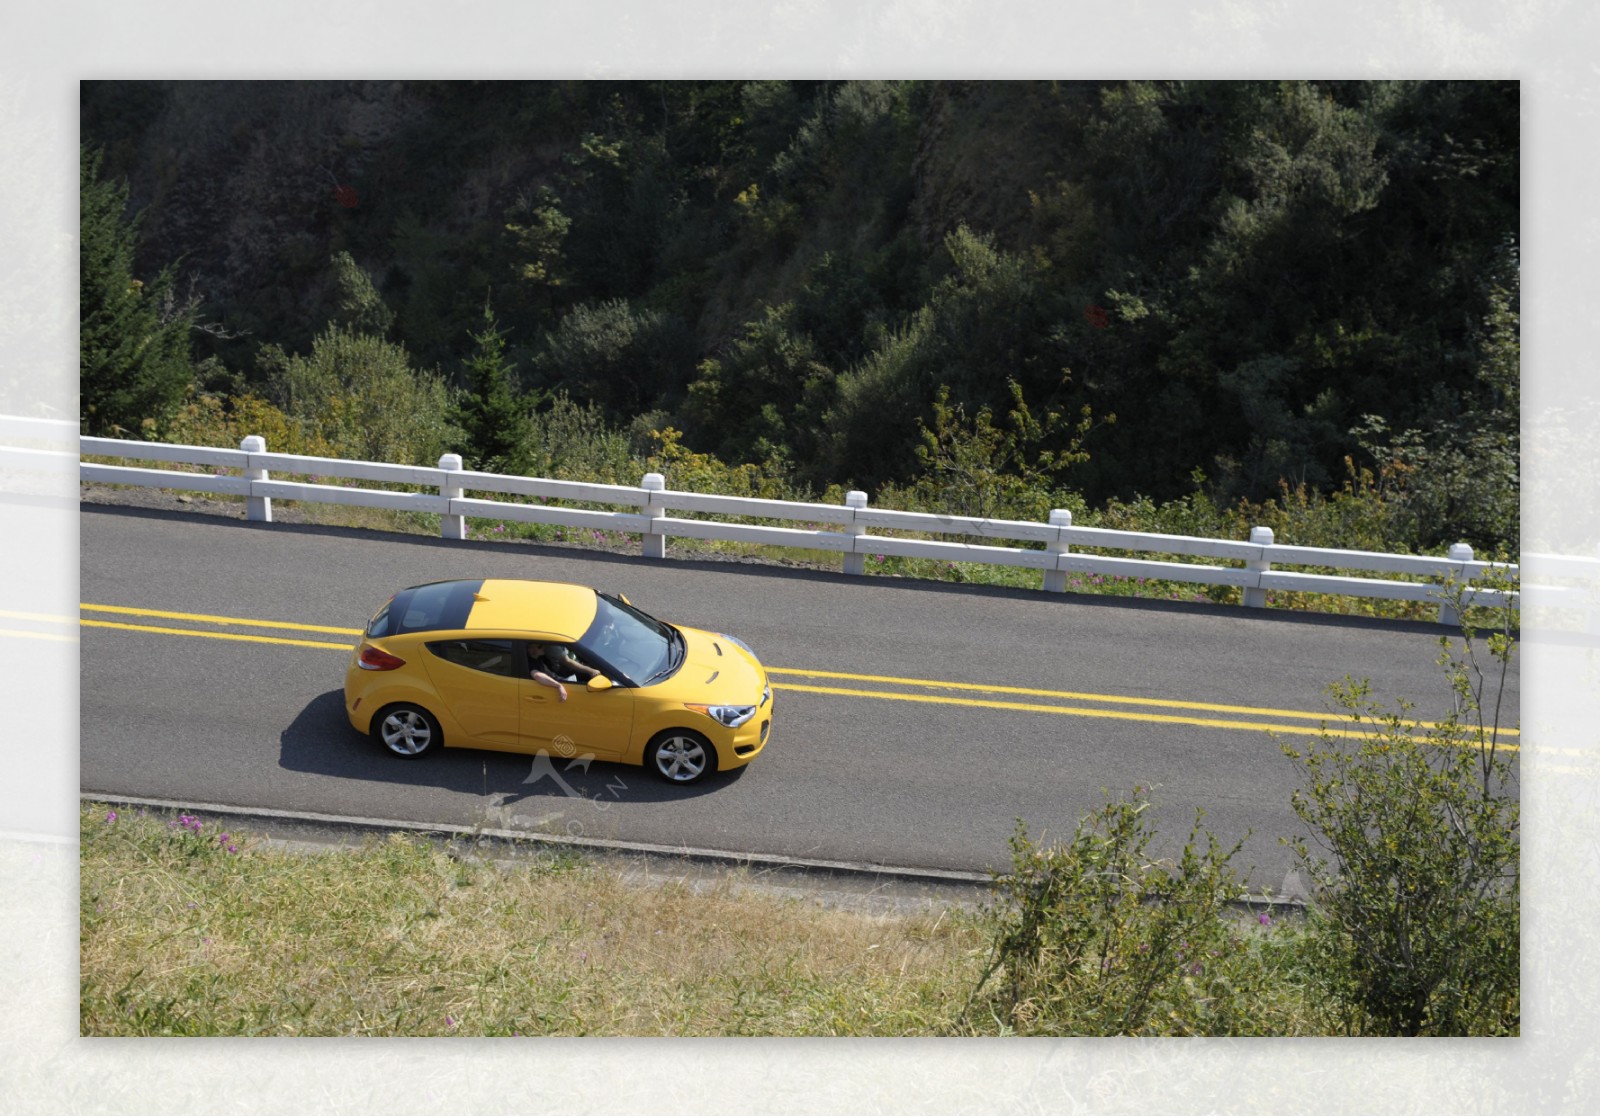 公路上的黄色轿车图片